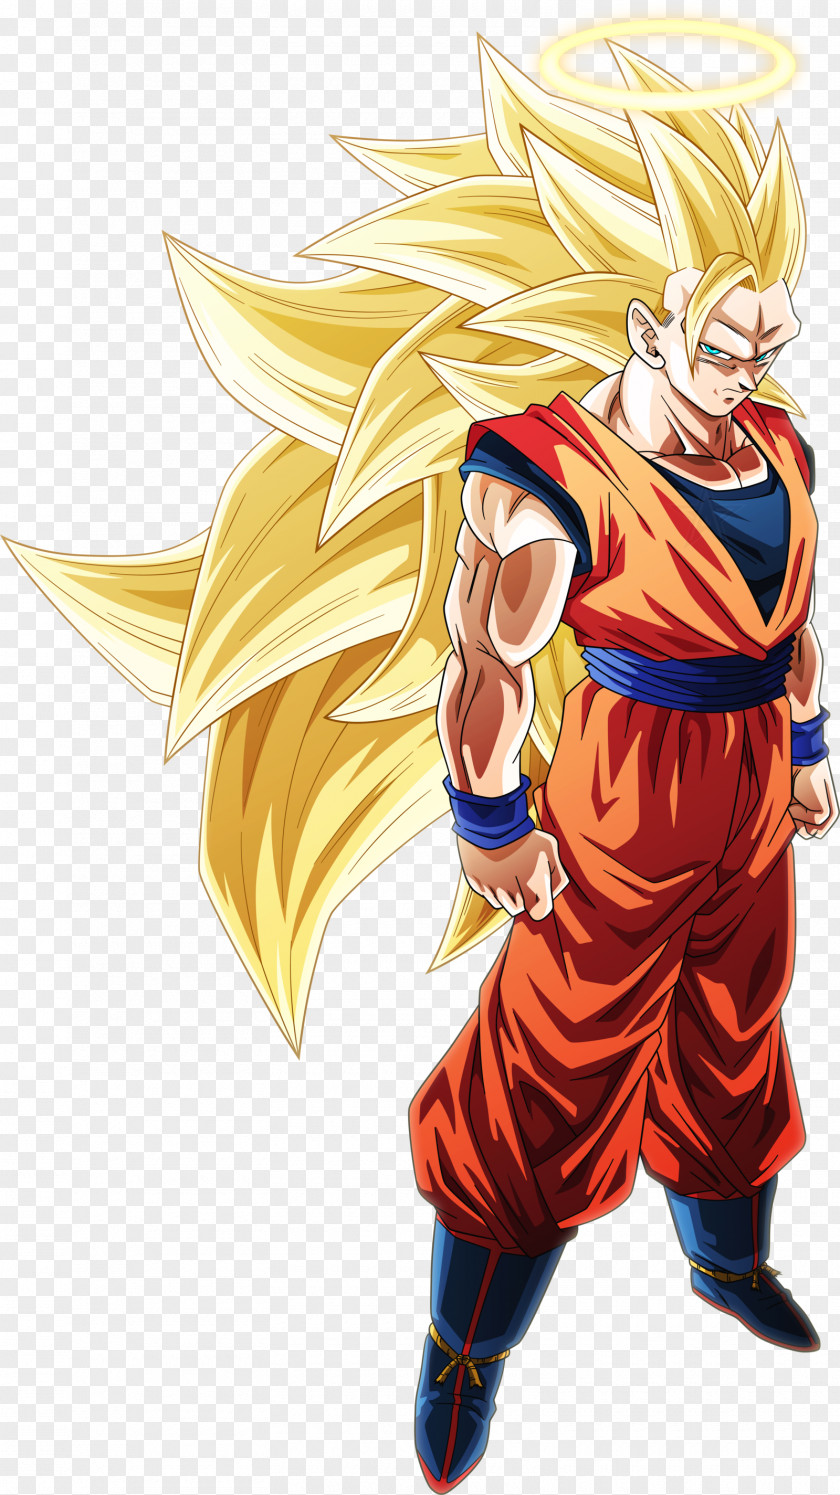 Super Saiyan Goku Dragon Ball Z Dokkan Battle Ball: Zenkai Royal Majin Buu PNG